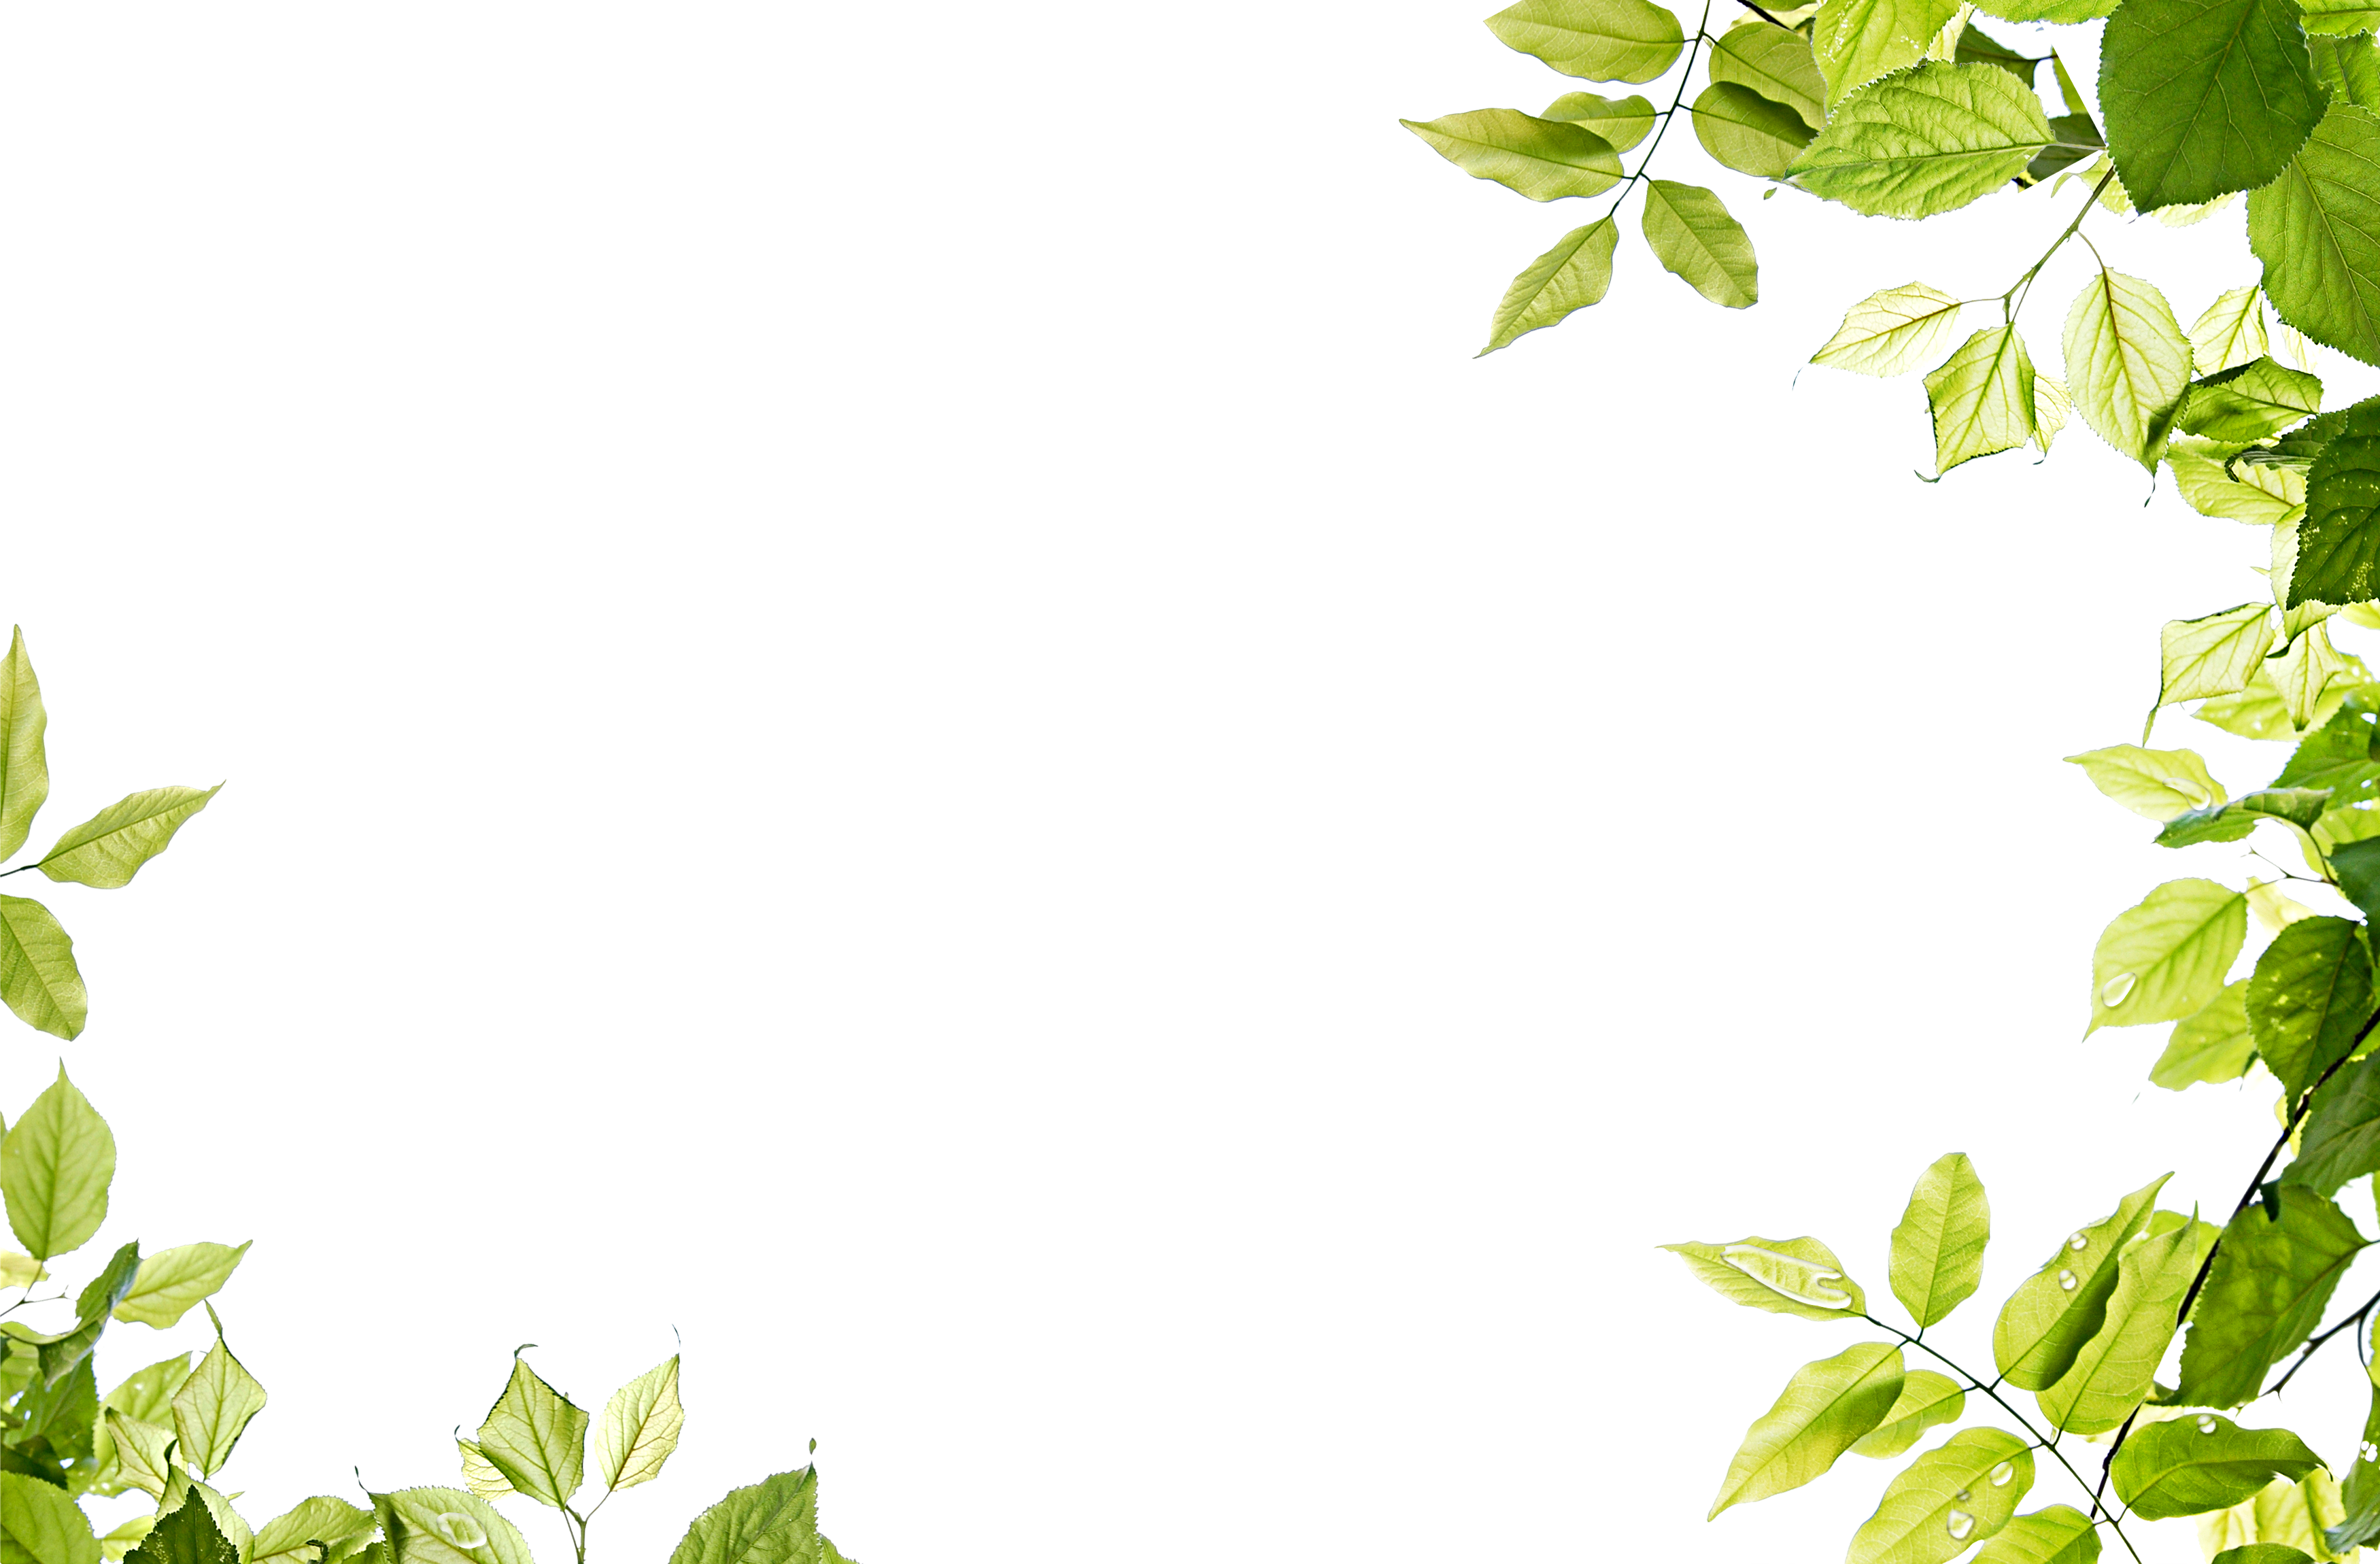 배경 장식에 일반적으로 사용되는 녹색 잎 테두리